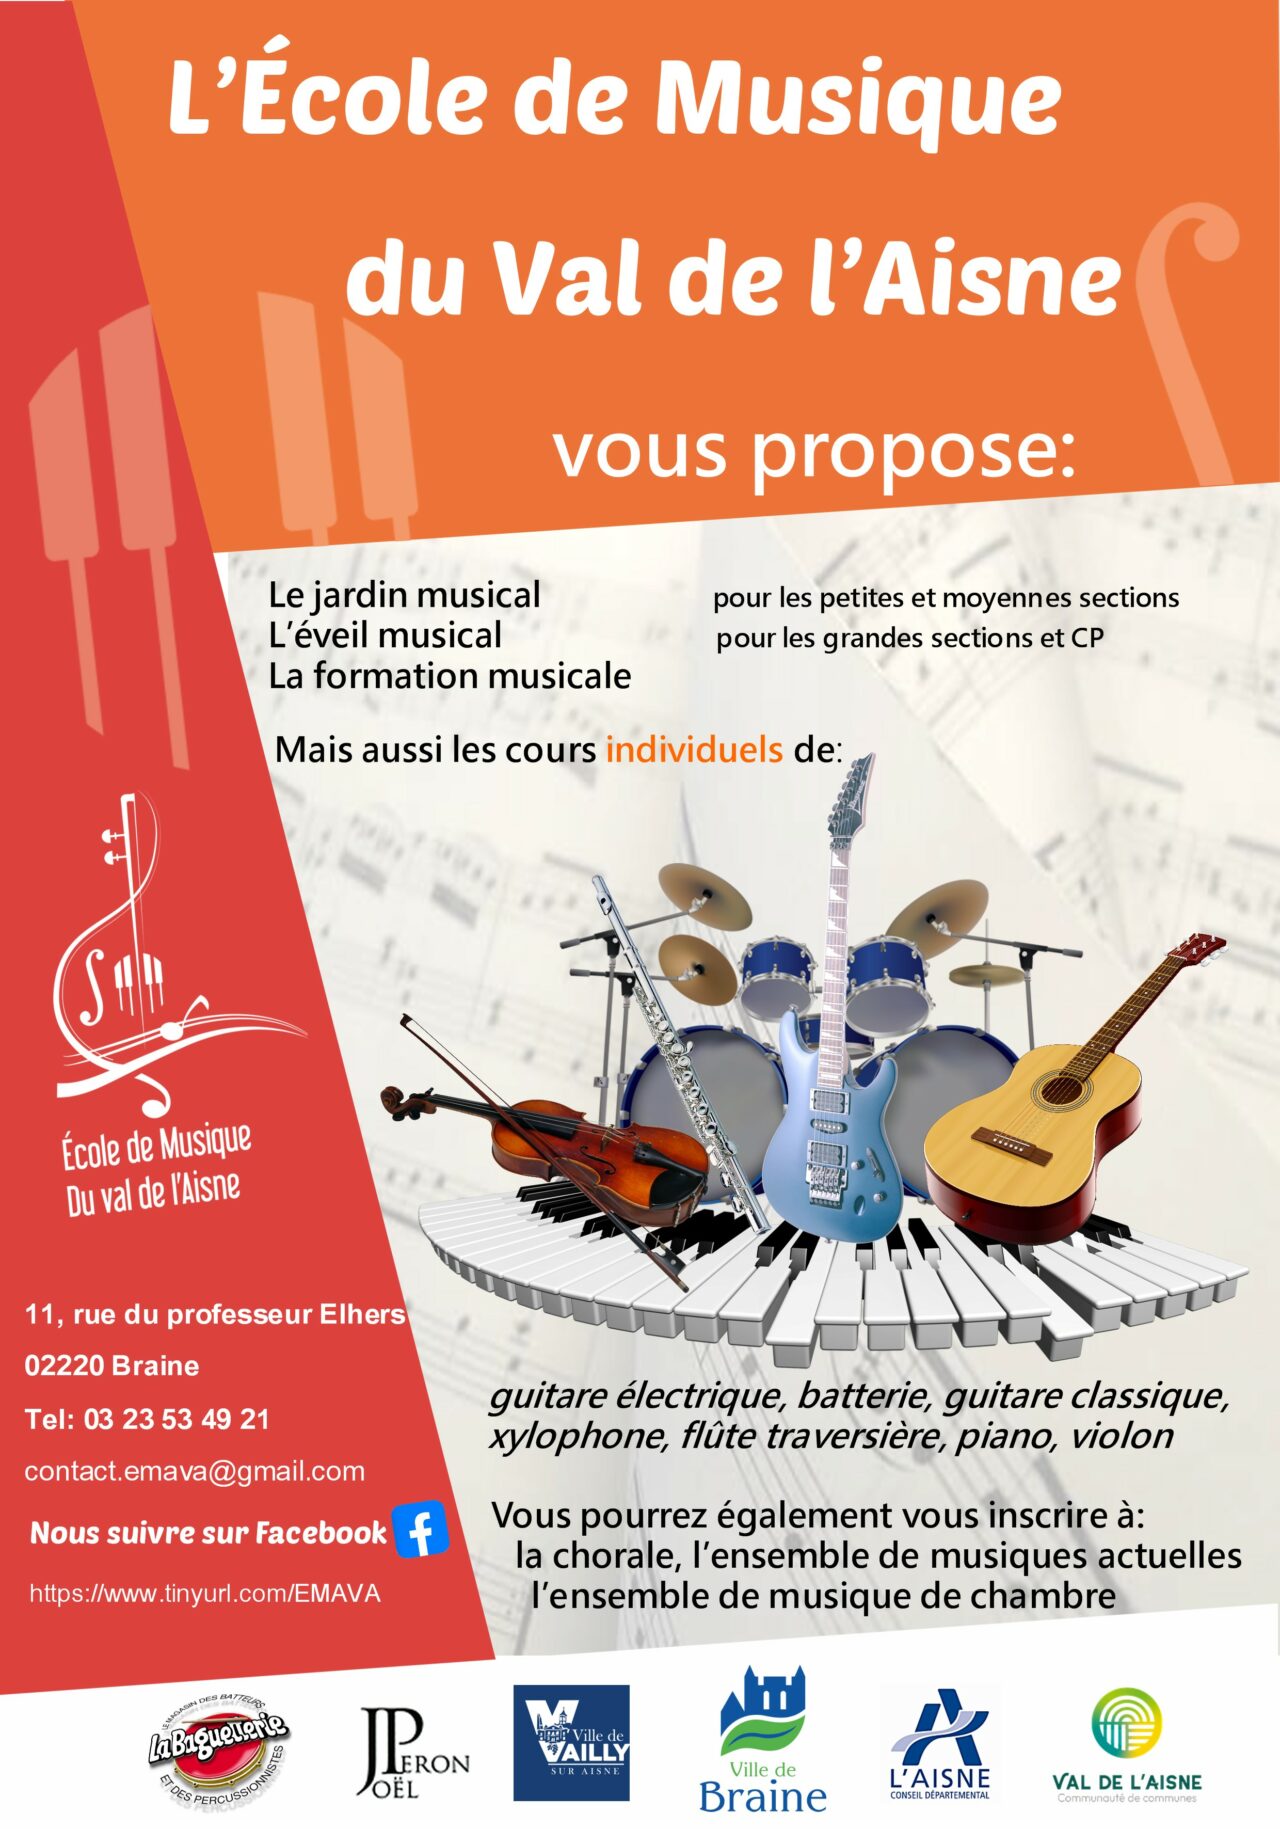 Ecole de musique du Val de l’Aisne | Ville de Braine